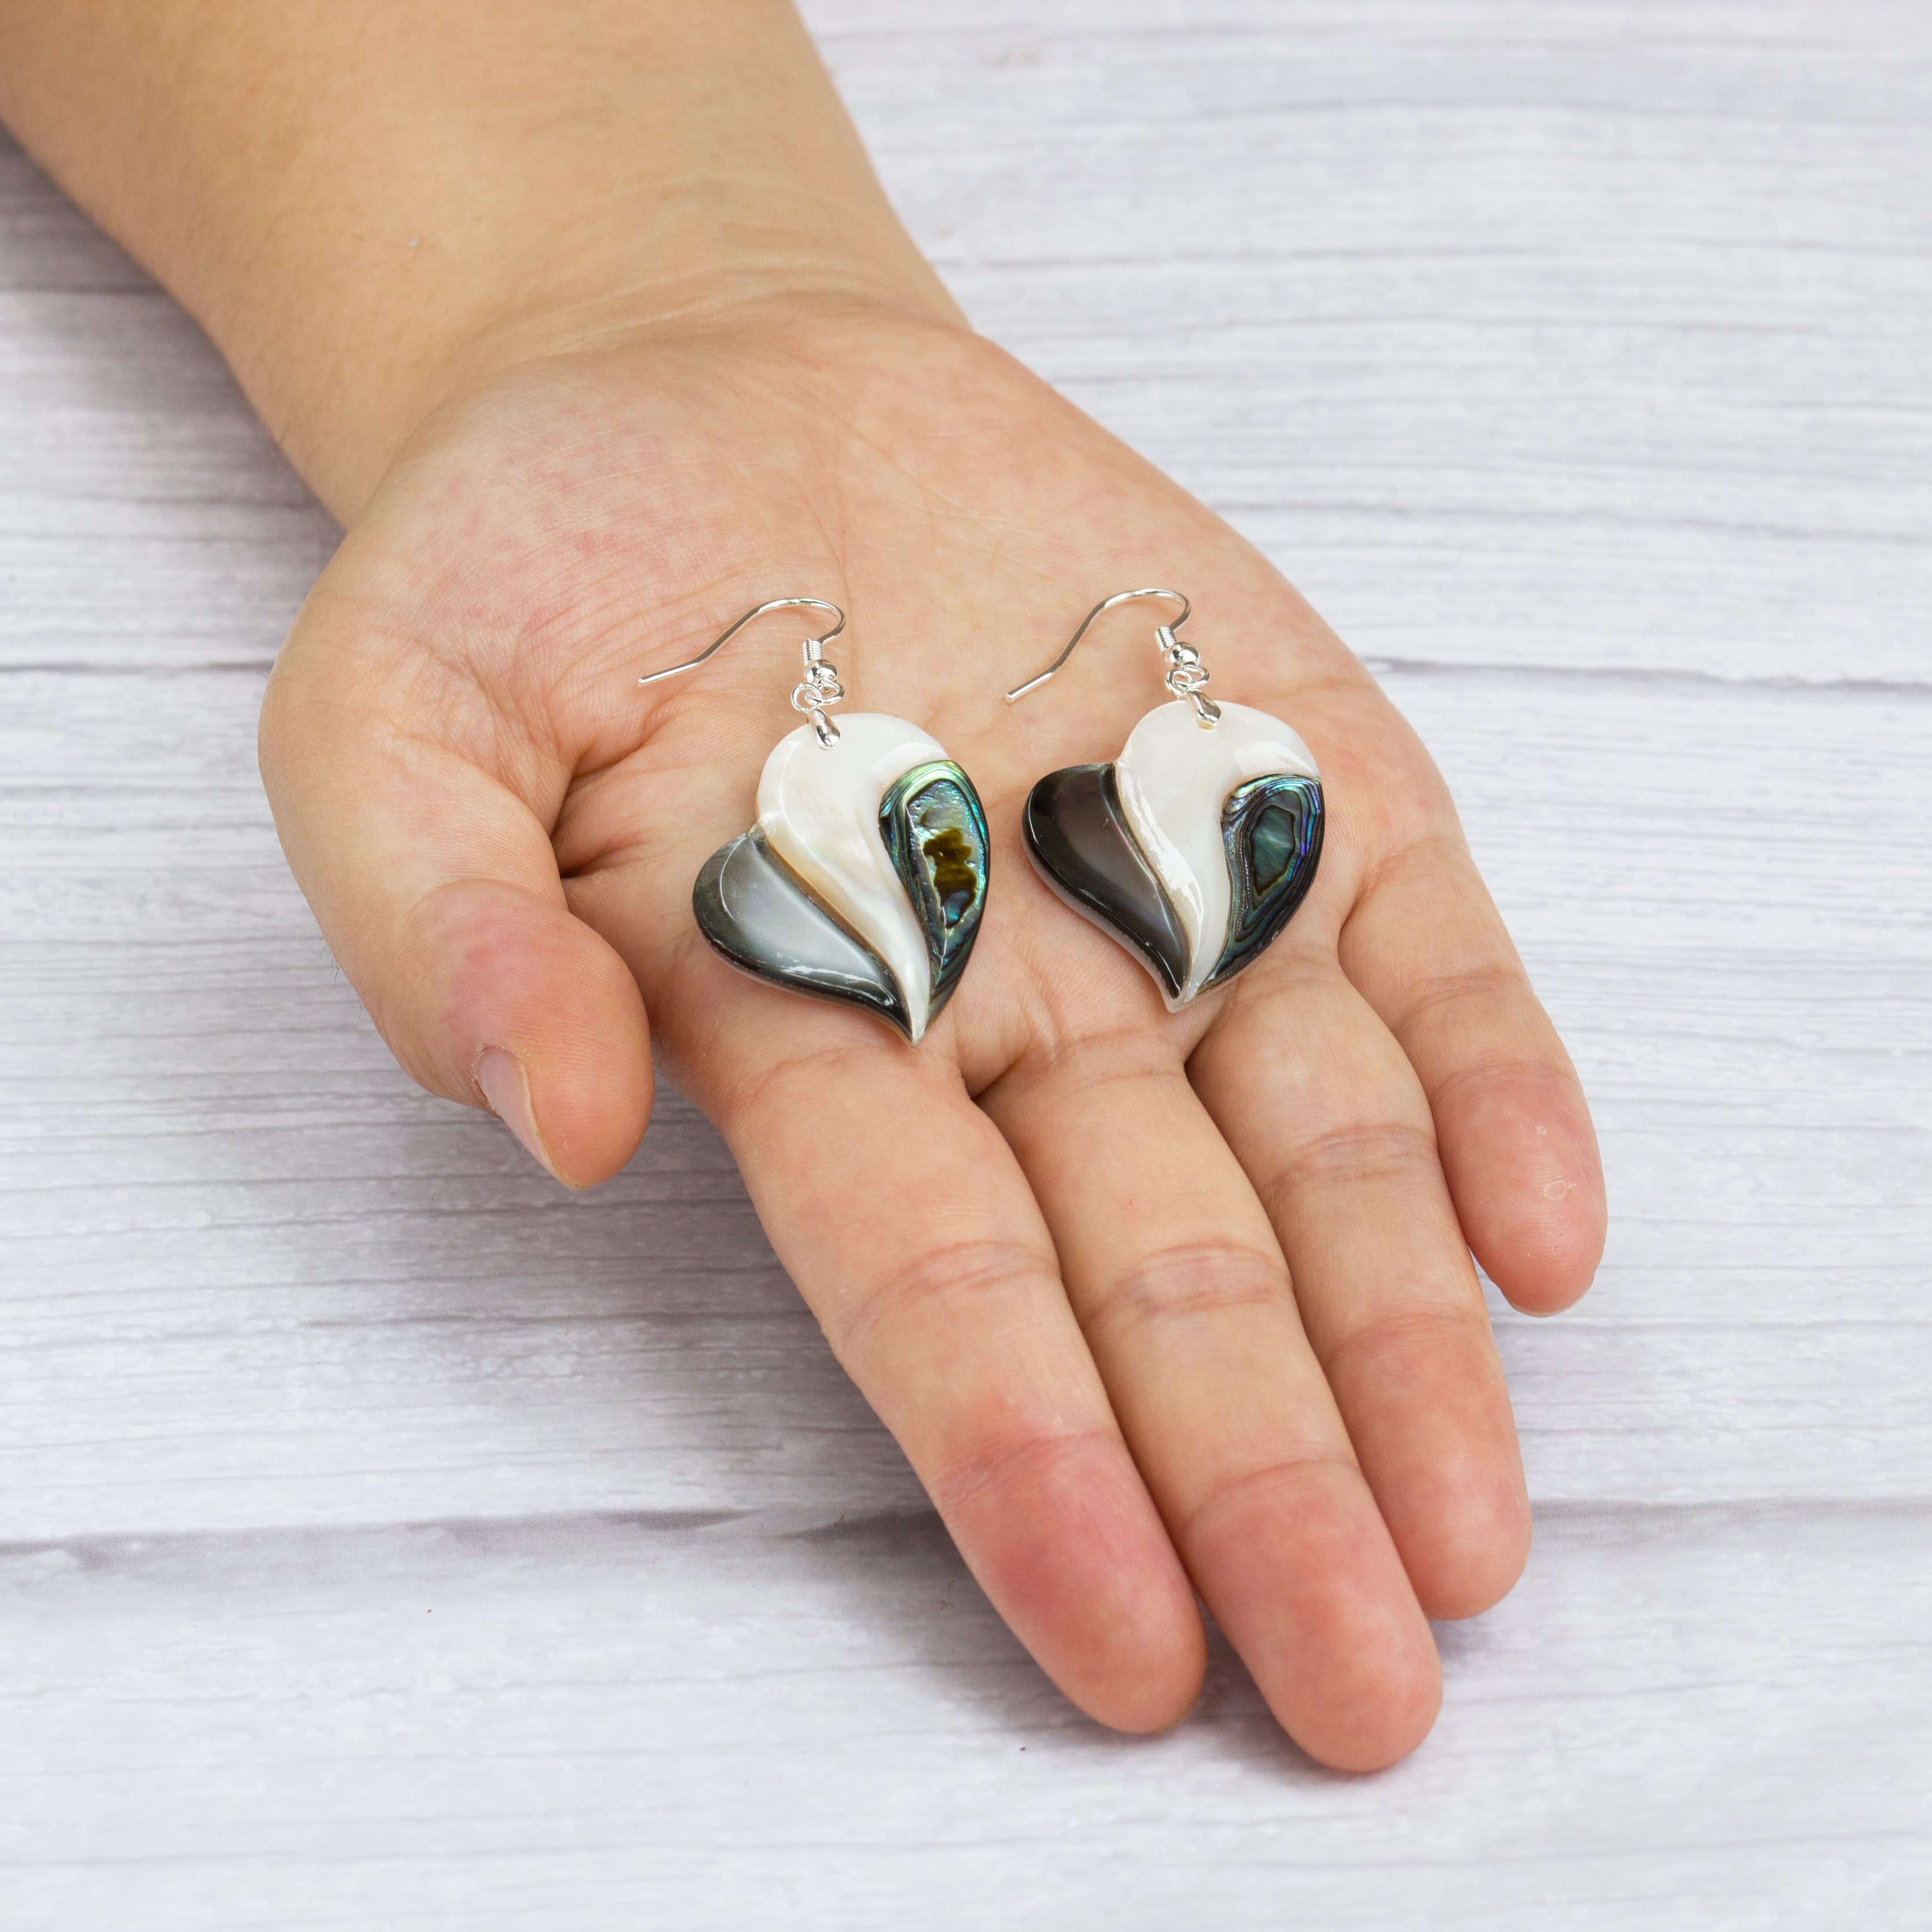 Abalone Shell Heart Drop Earrings